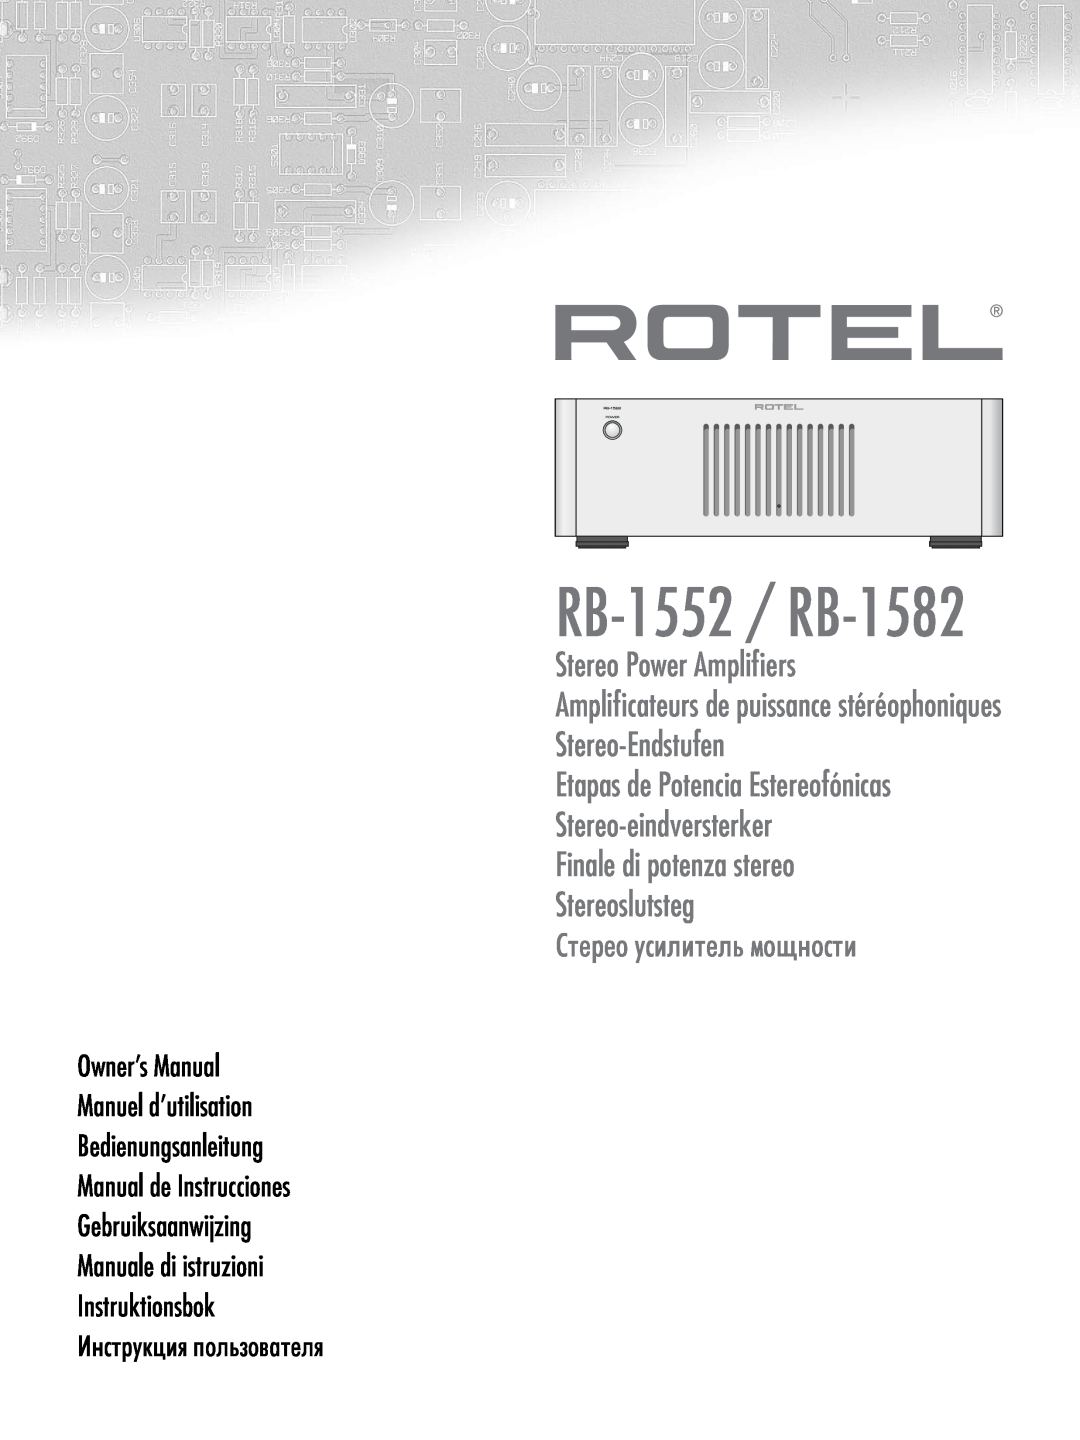 Rotel owner manual RB-1552 / RB-1582, Stereo Power Amplifiers, Amplificateurs de puissance stéréophoniques 